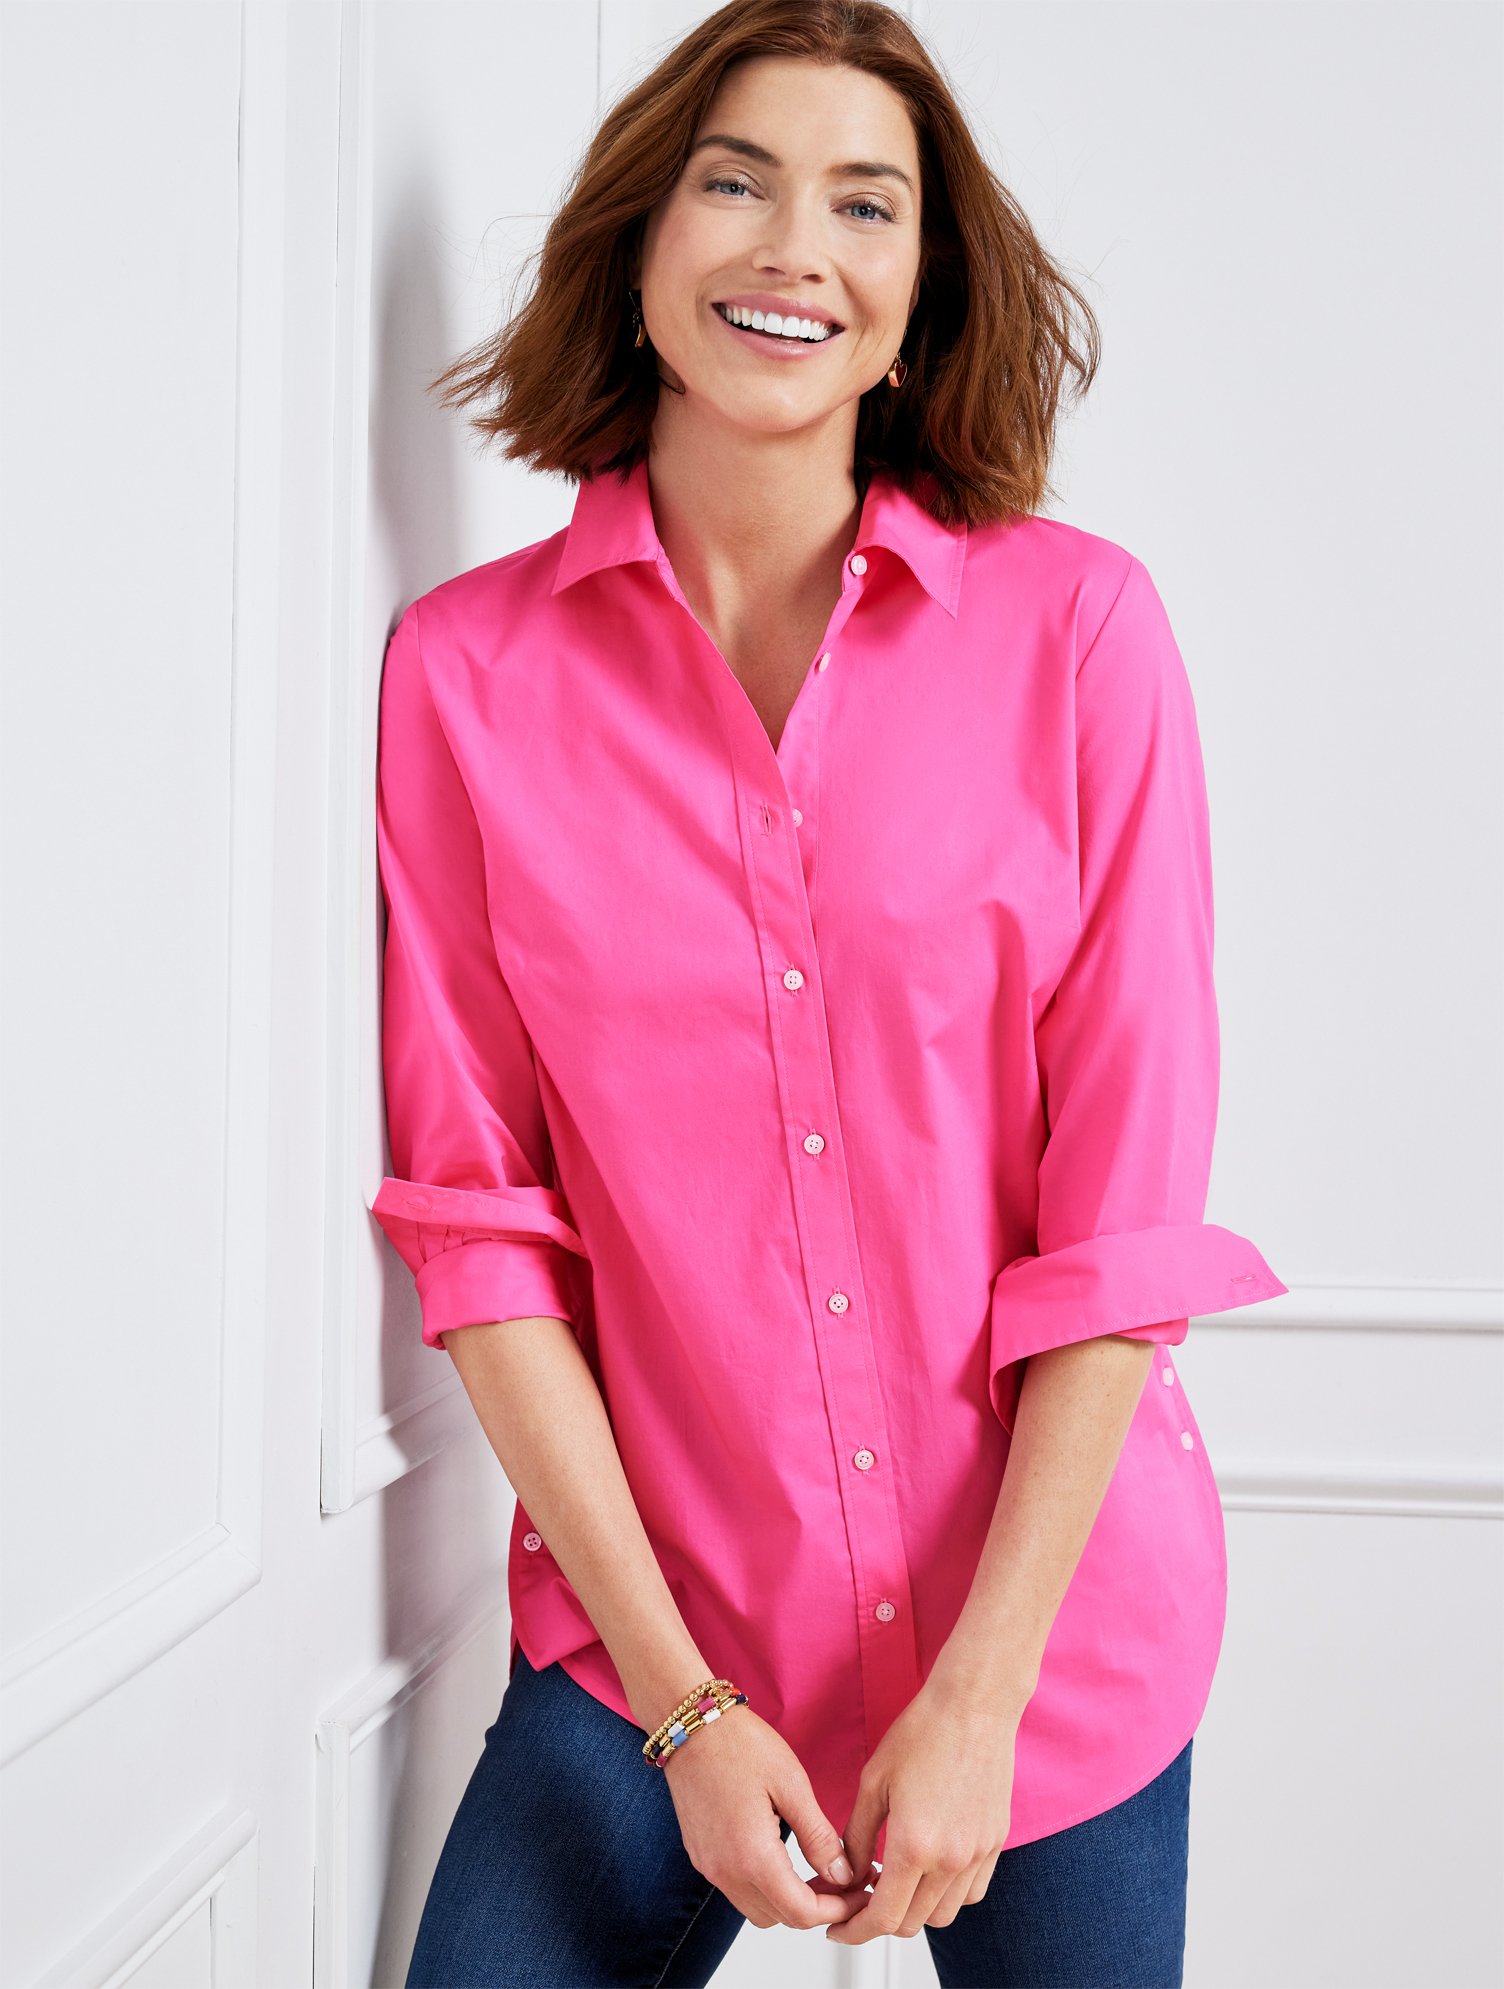 Talbots Side Button Boyfriend Shirt - Pink Geranium - 2x - 100% Cotton